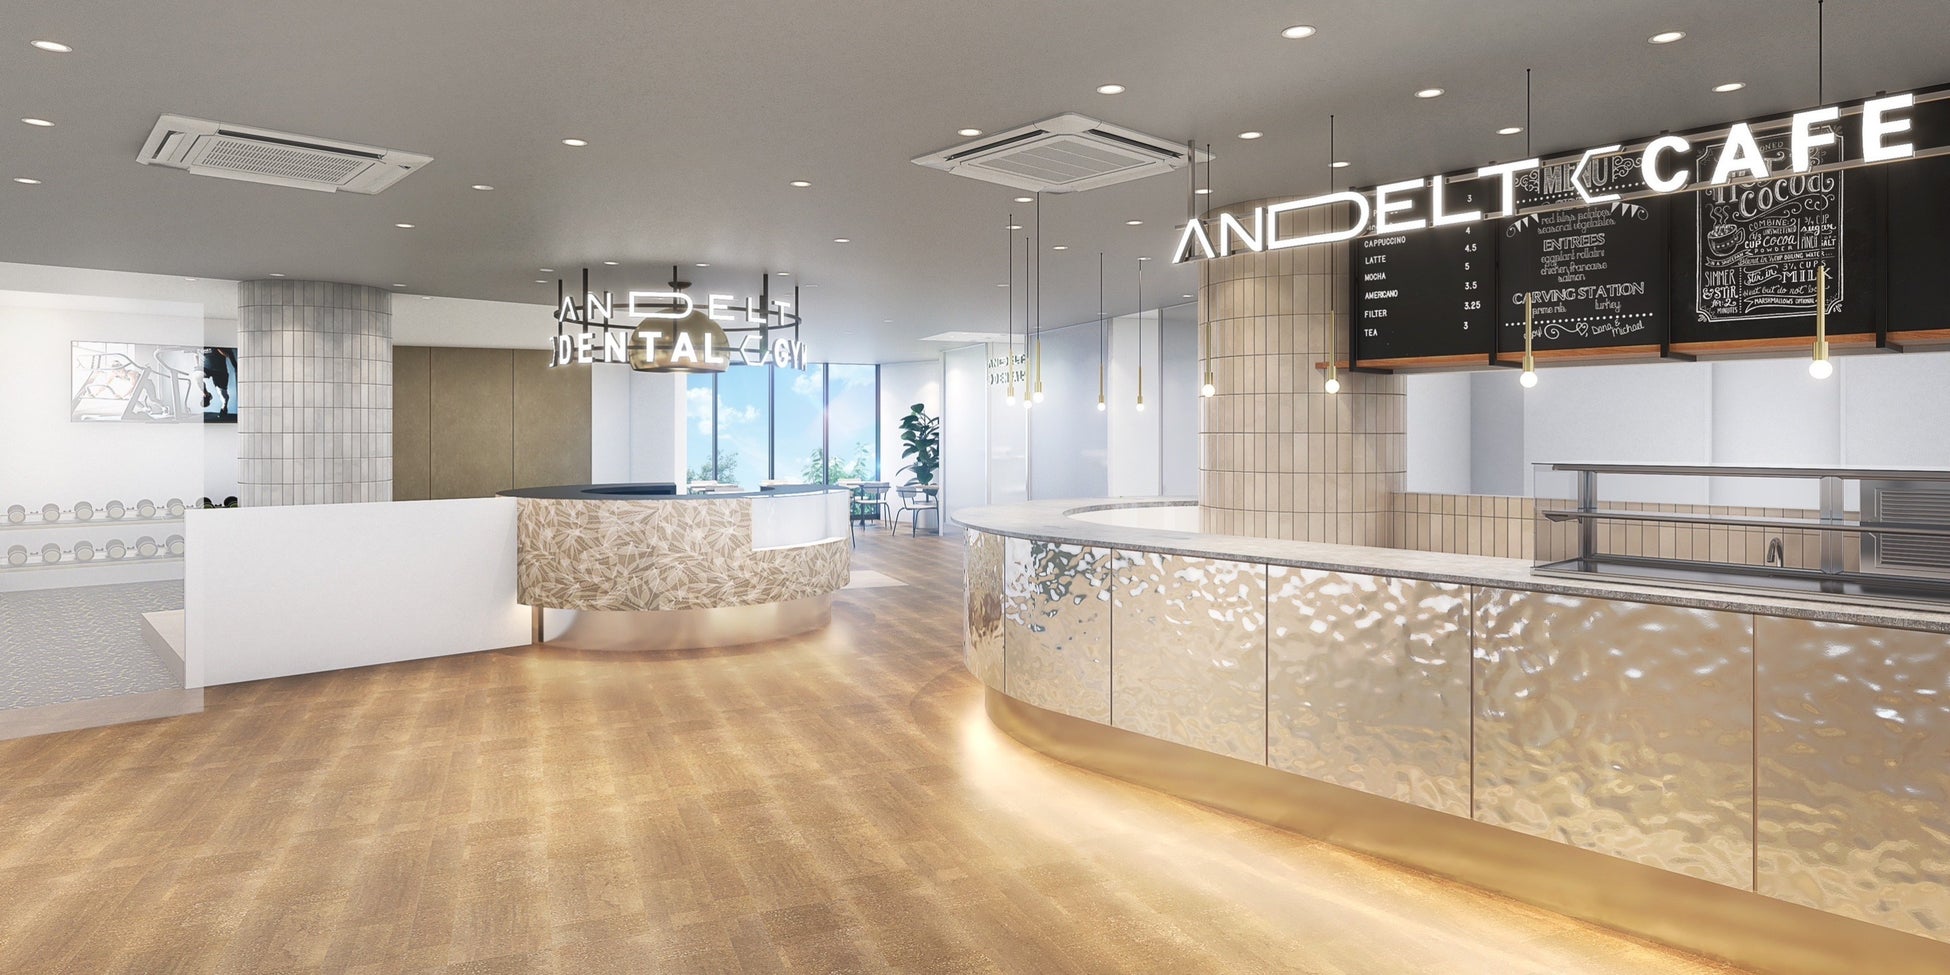 歯科医院・カフェ・ジムの共同ウェルネス施設「ANDELT(アンデルト)」が道玄坂通に開業のサブ画像1